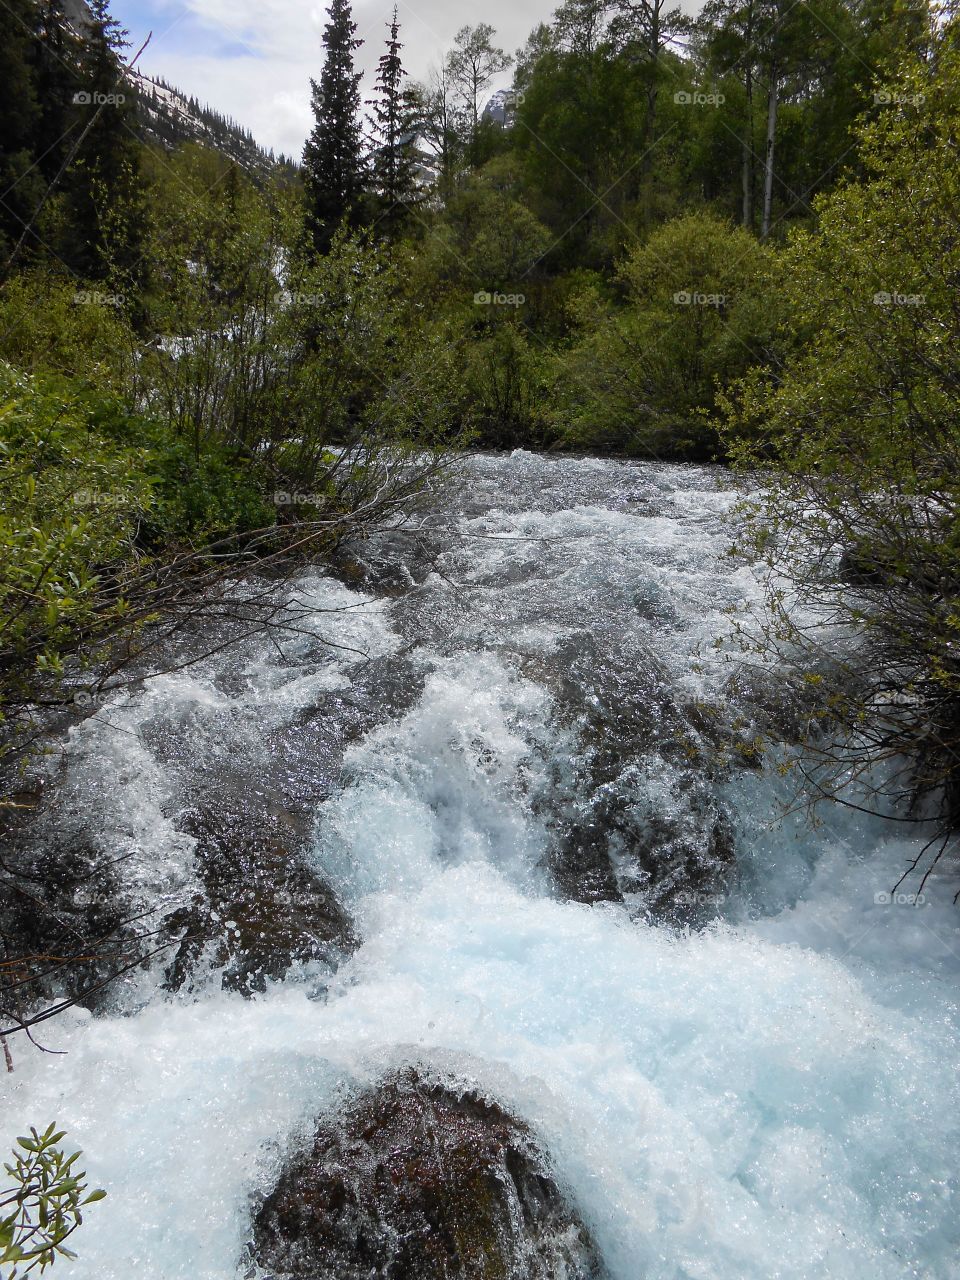 Roaring waters of Maroon Creek